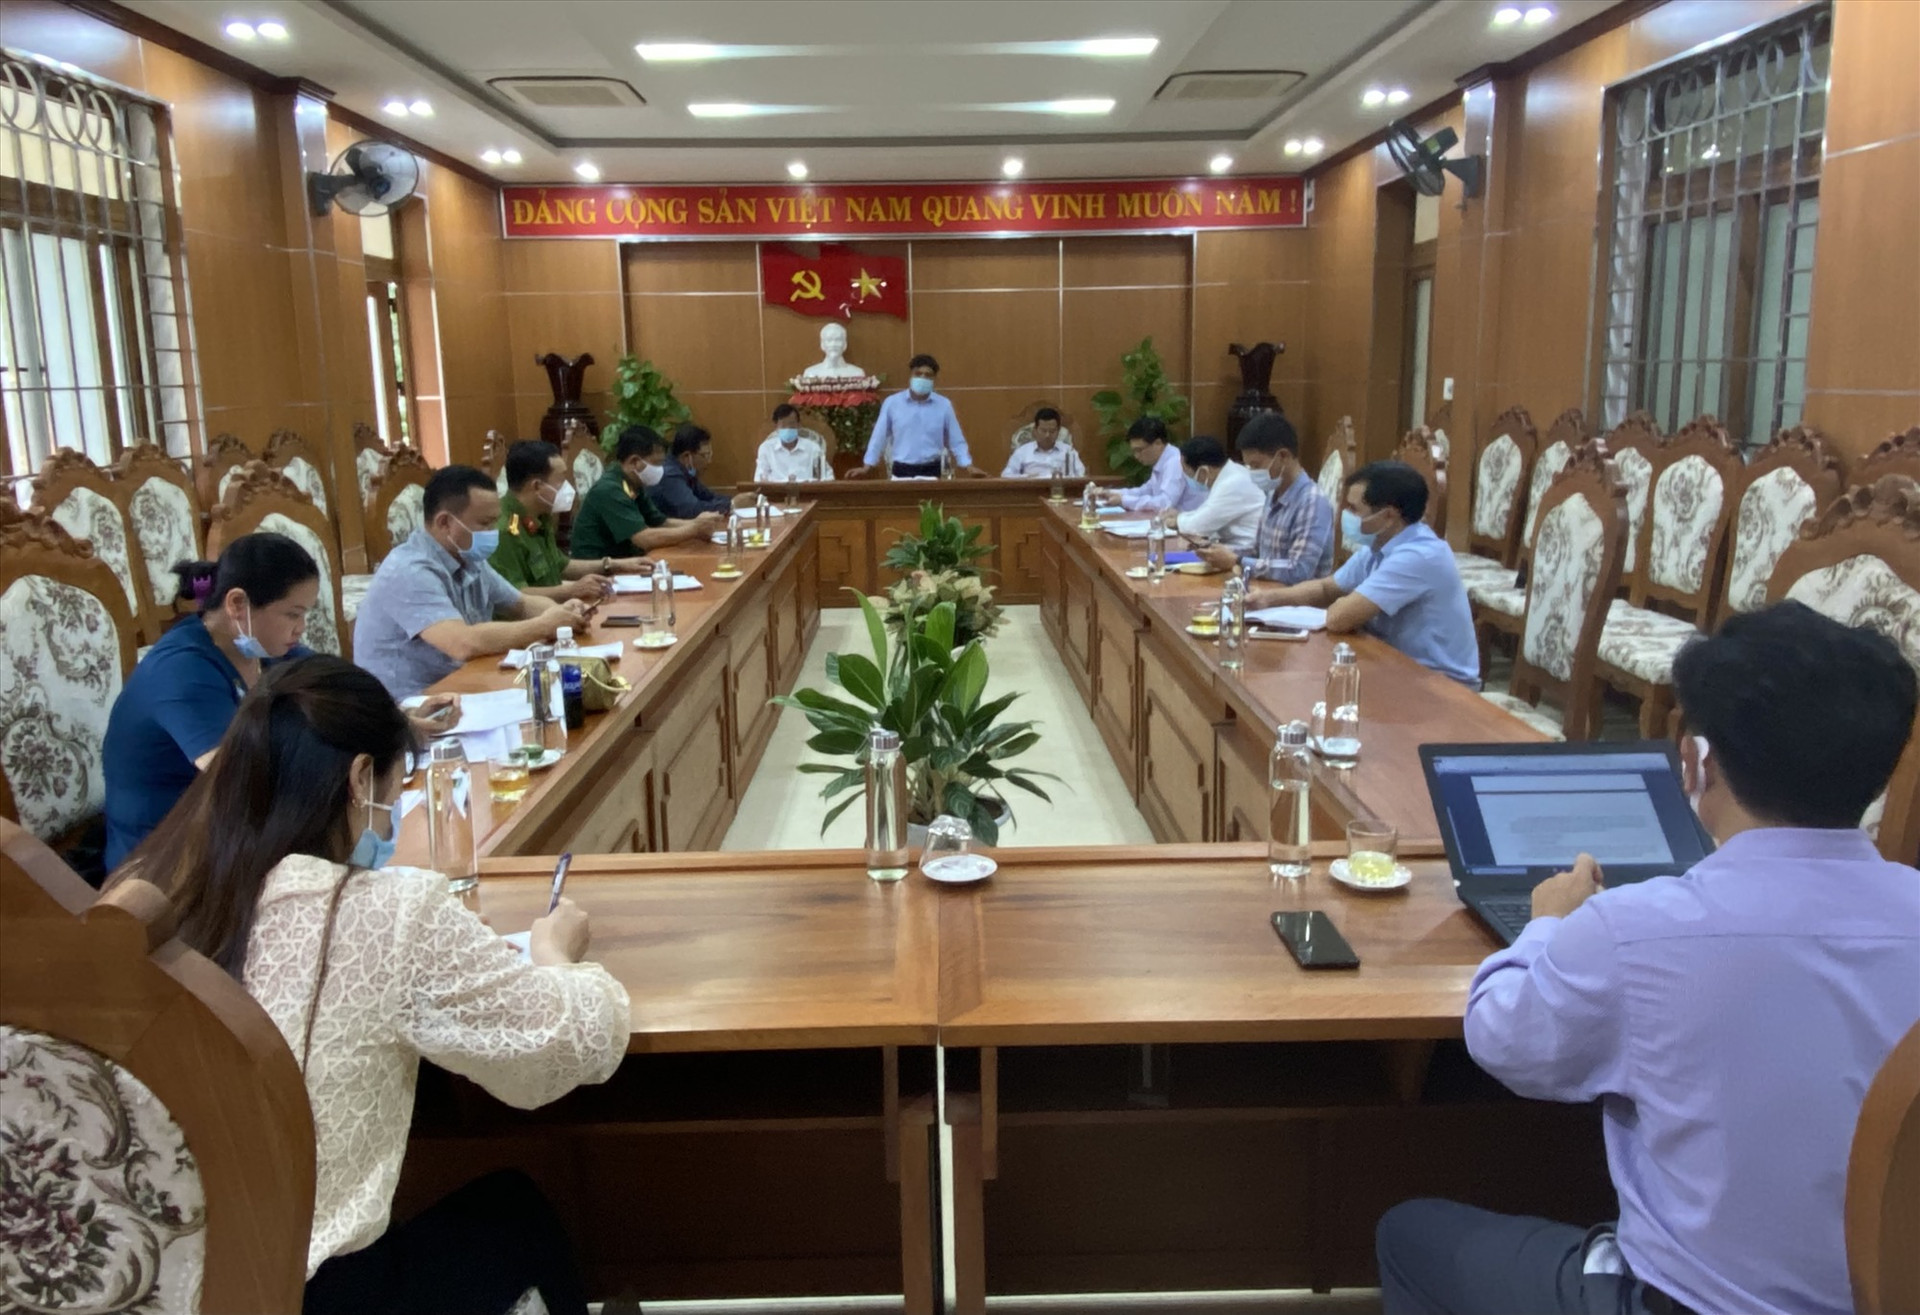 HÌNH: BCĐ Phòng chống dịch Covid-19 huyện Phước Sơn họp khẩn, bàn phương án chống dịch